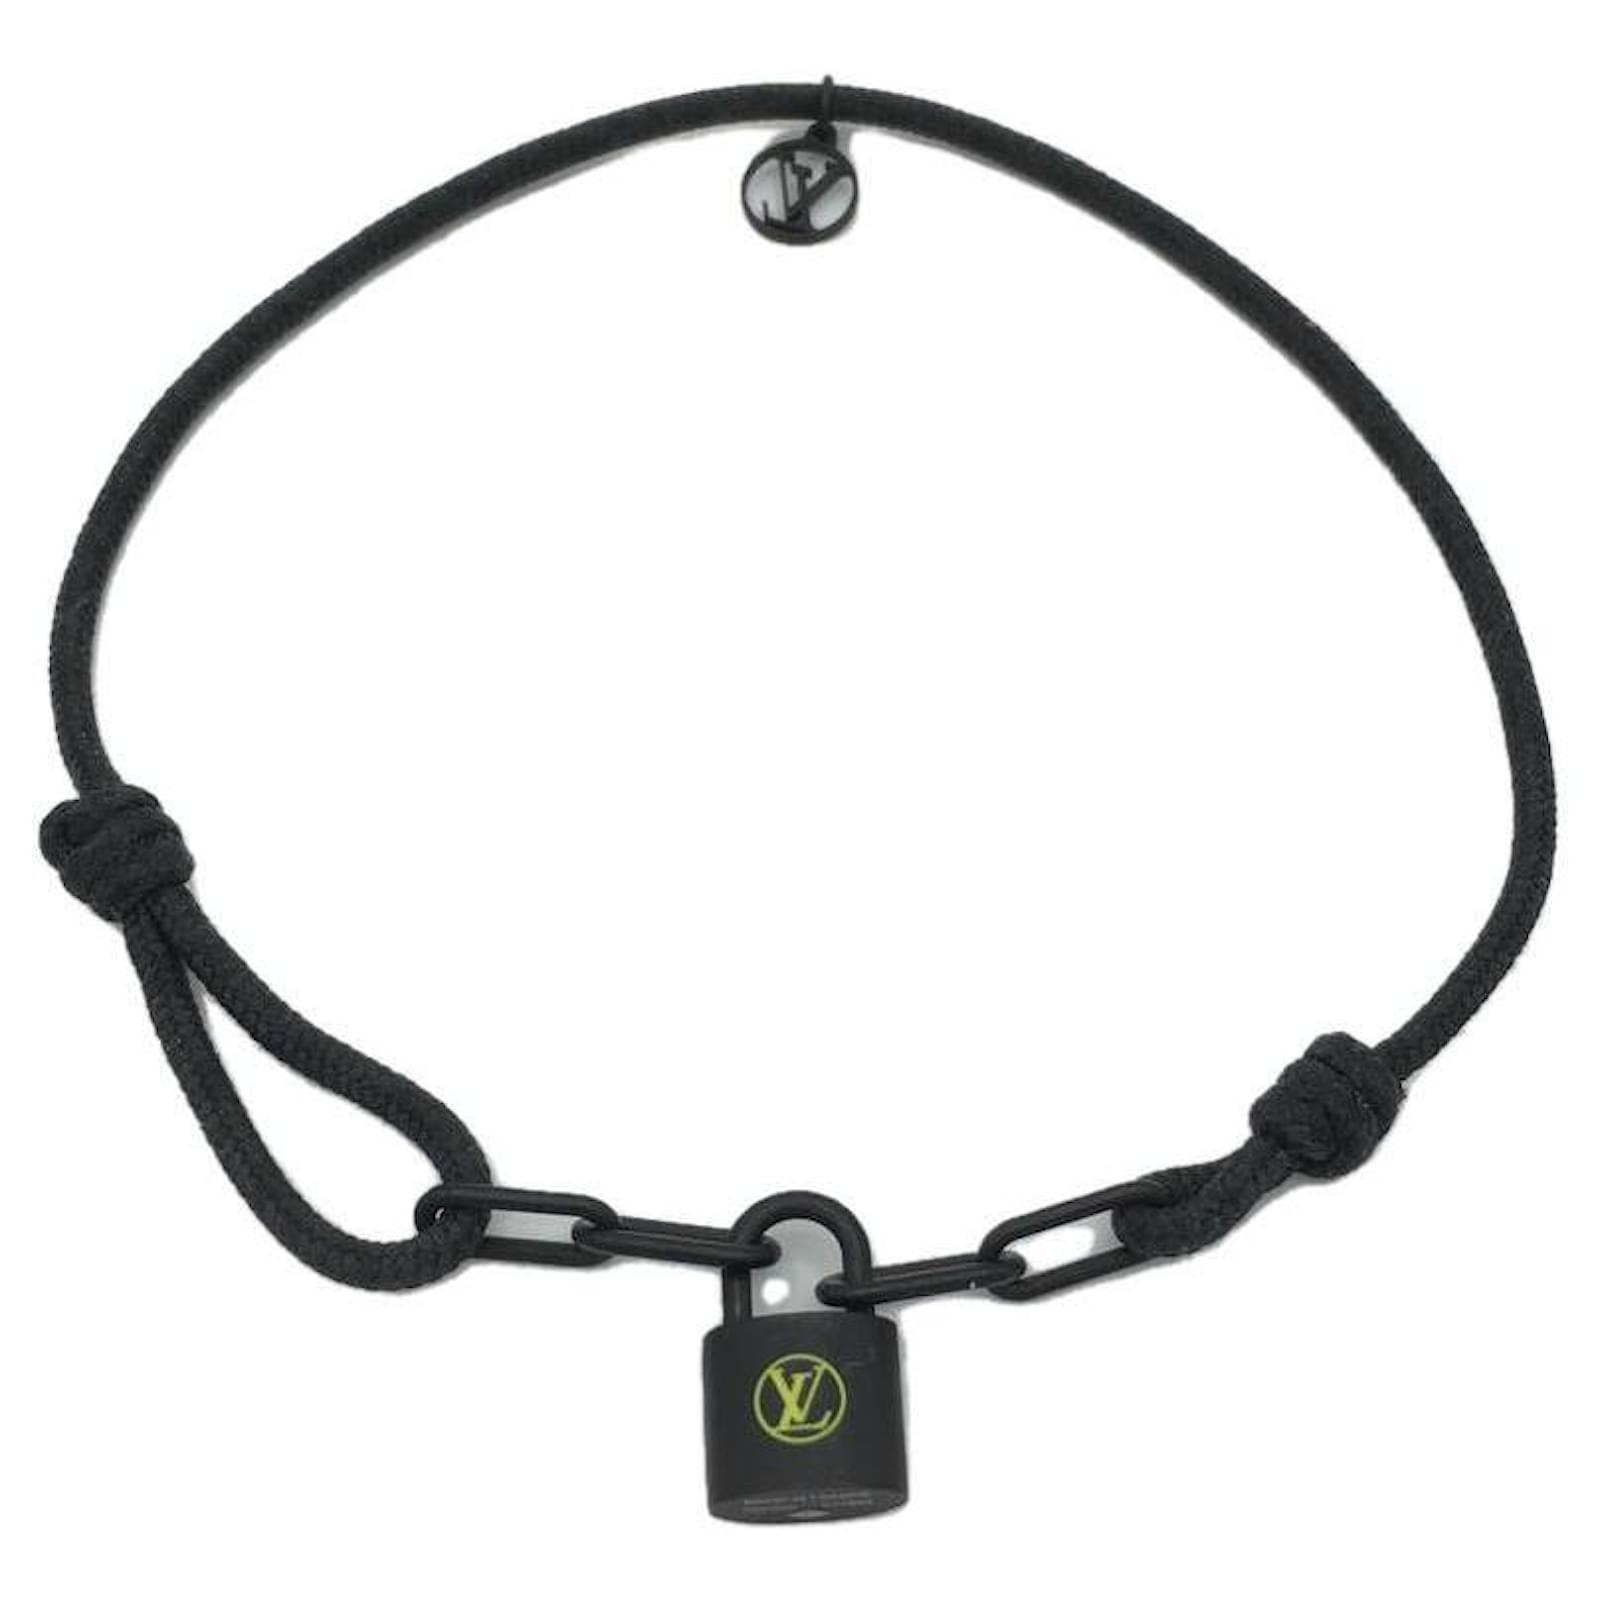 silver lockit bracelet black